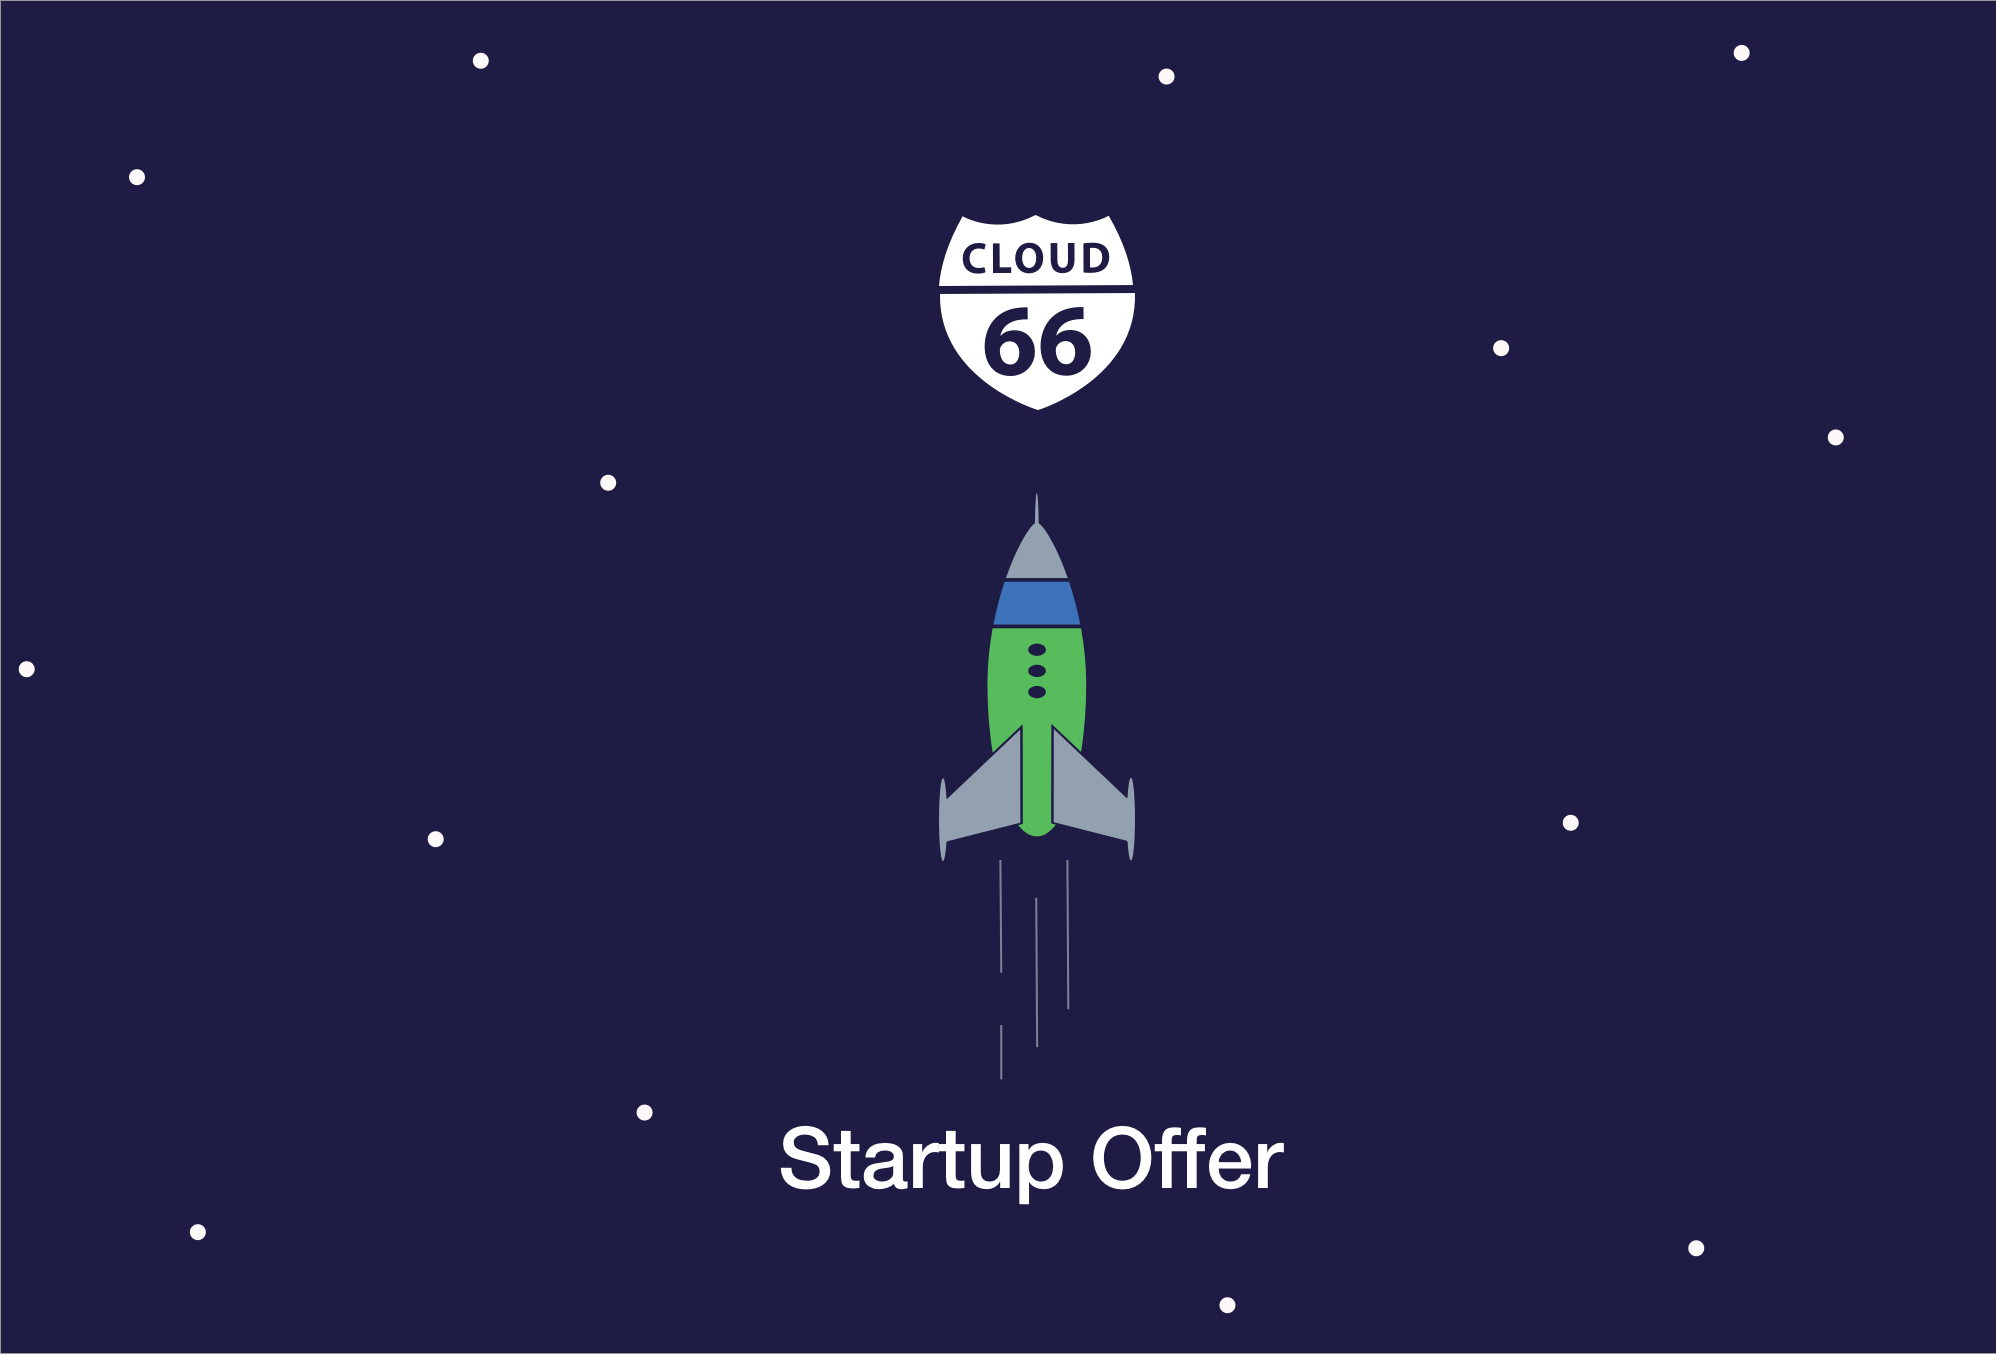 Cloud66-startup-offer-b